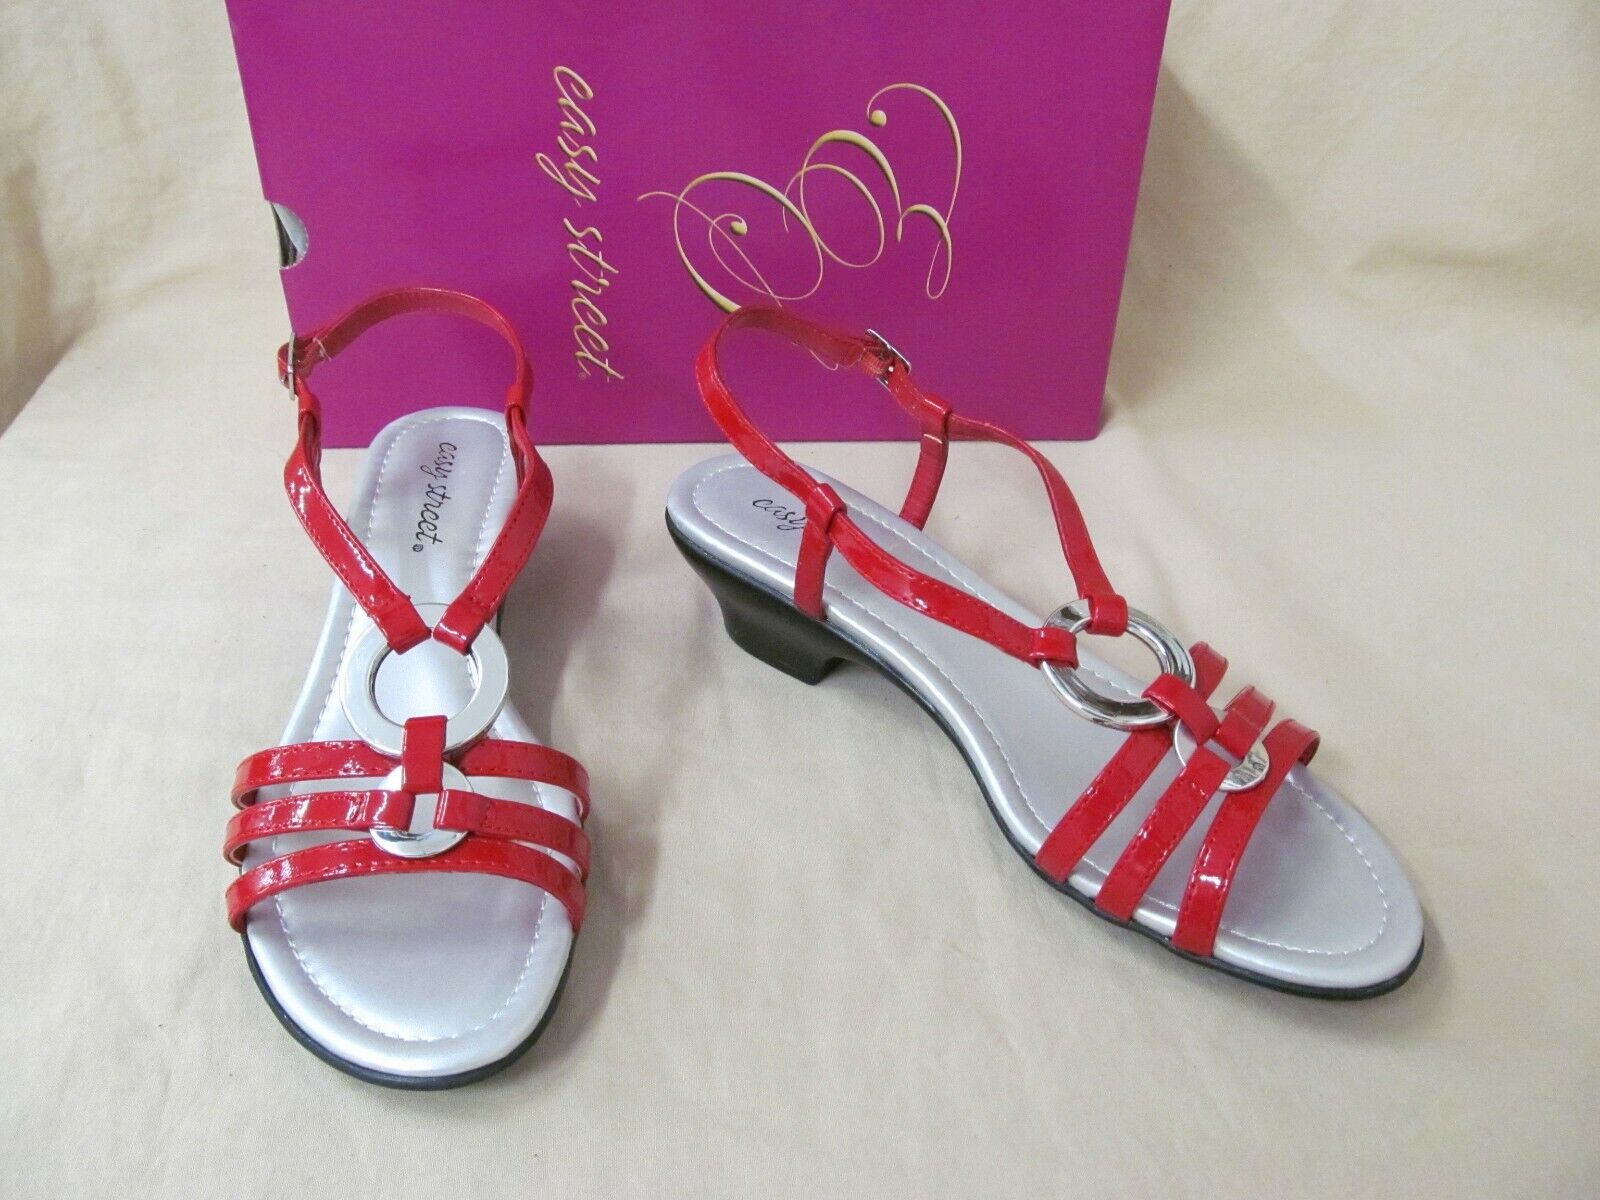 red dress sandals low heel